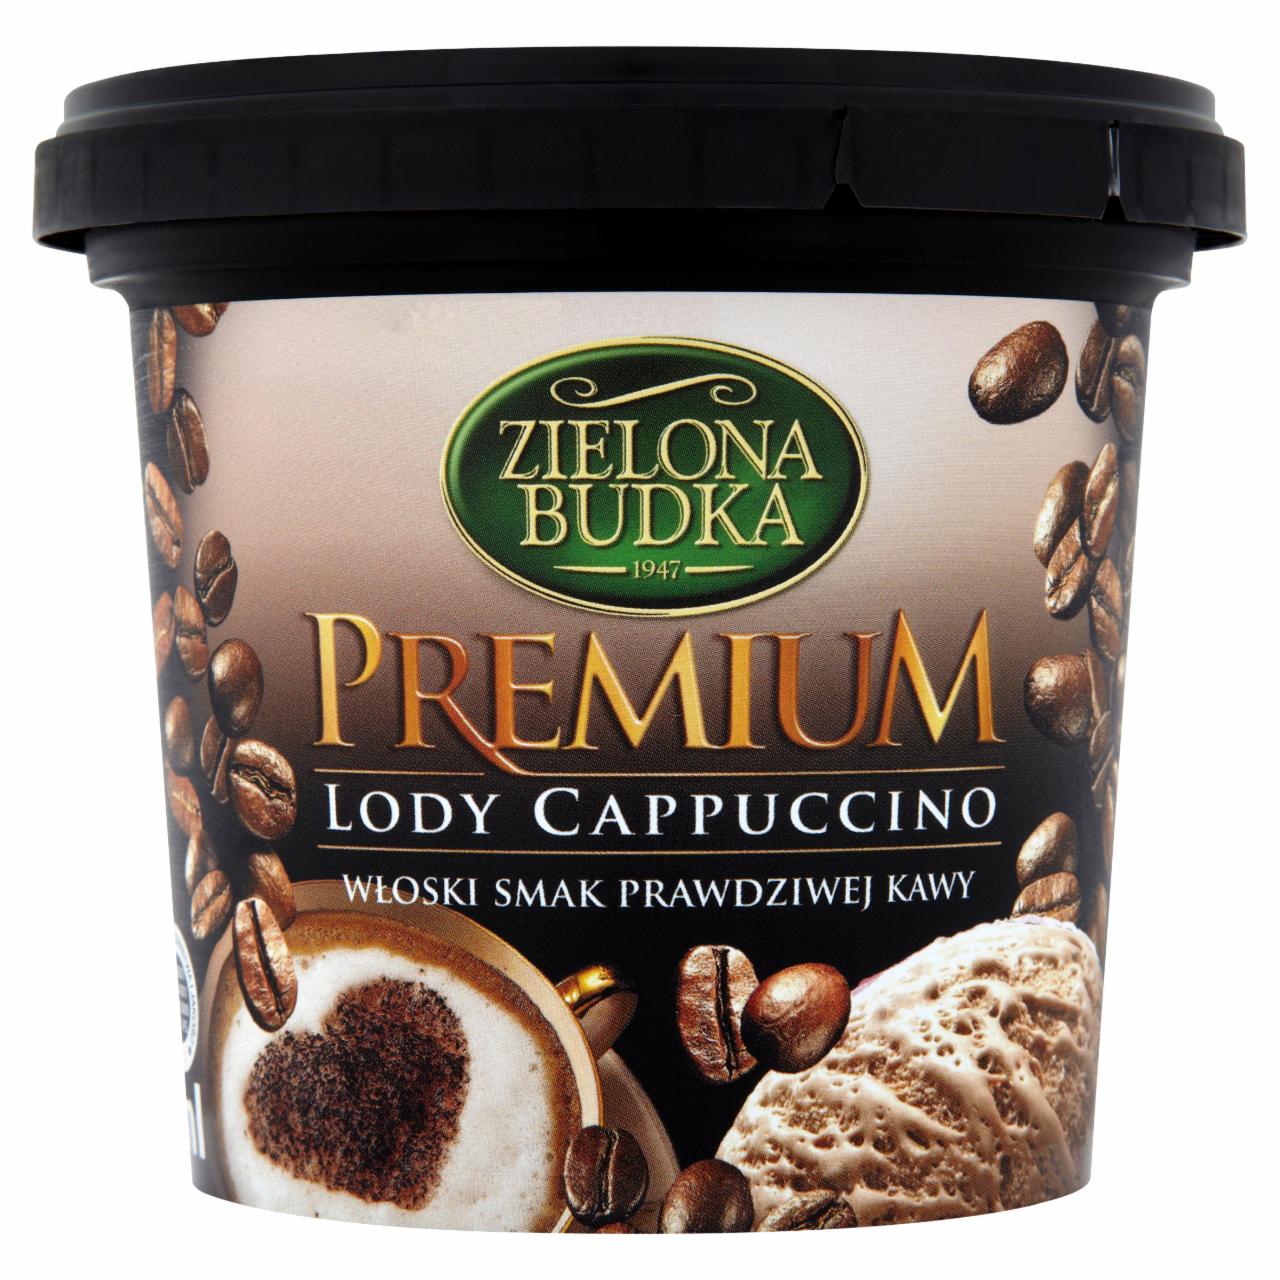 Zdjęcia - Zielona Budka Premium Lody cappuccino 500 ml